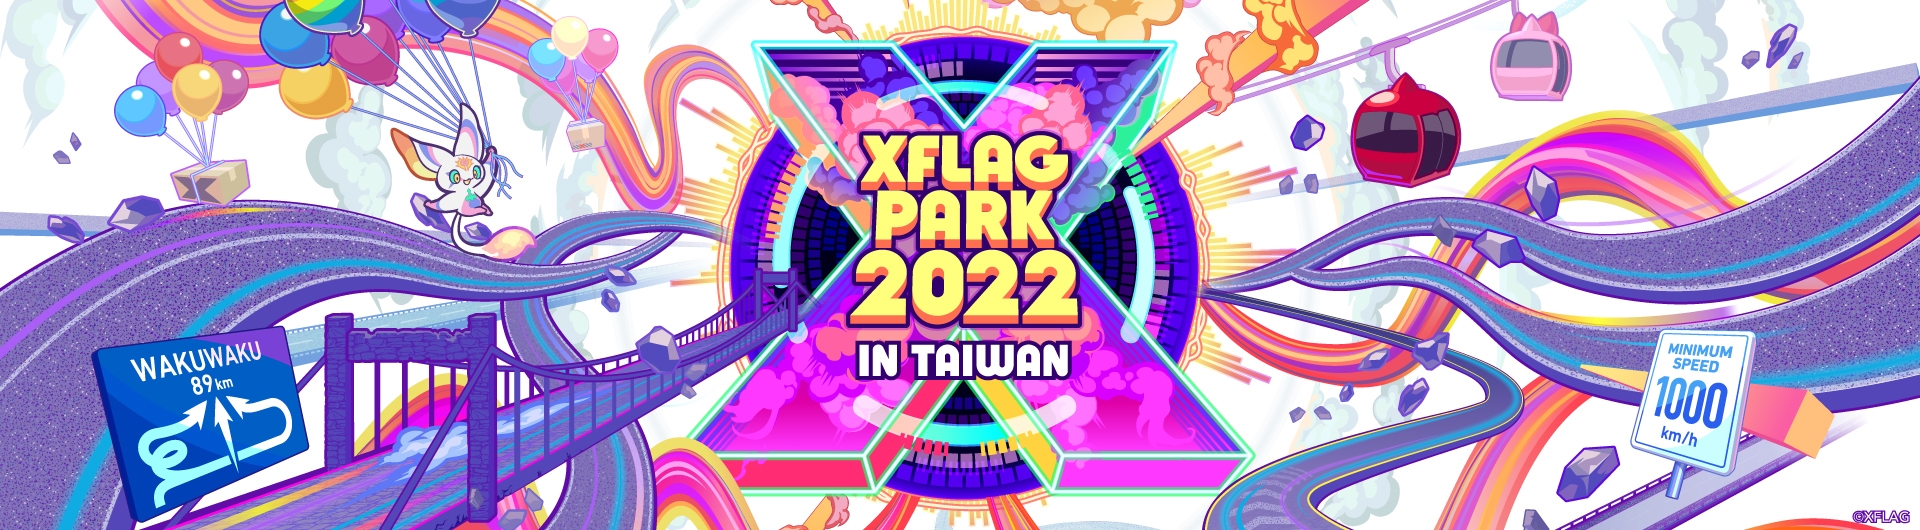 《怪物彈珠》「XFLAG PARK 2022 IN TAIWAN」